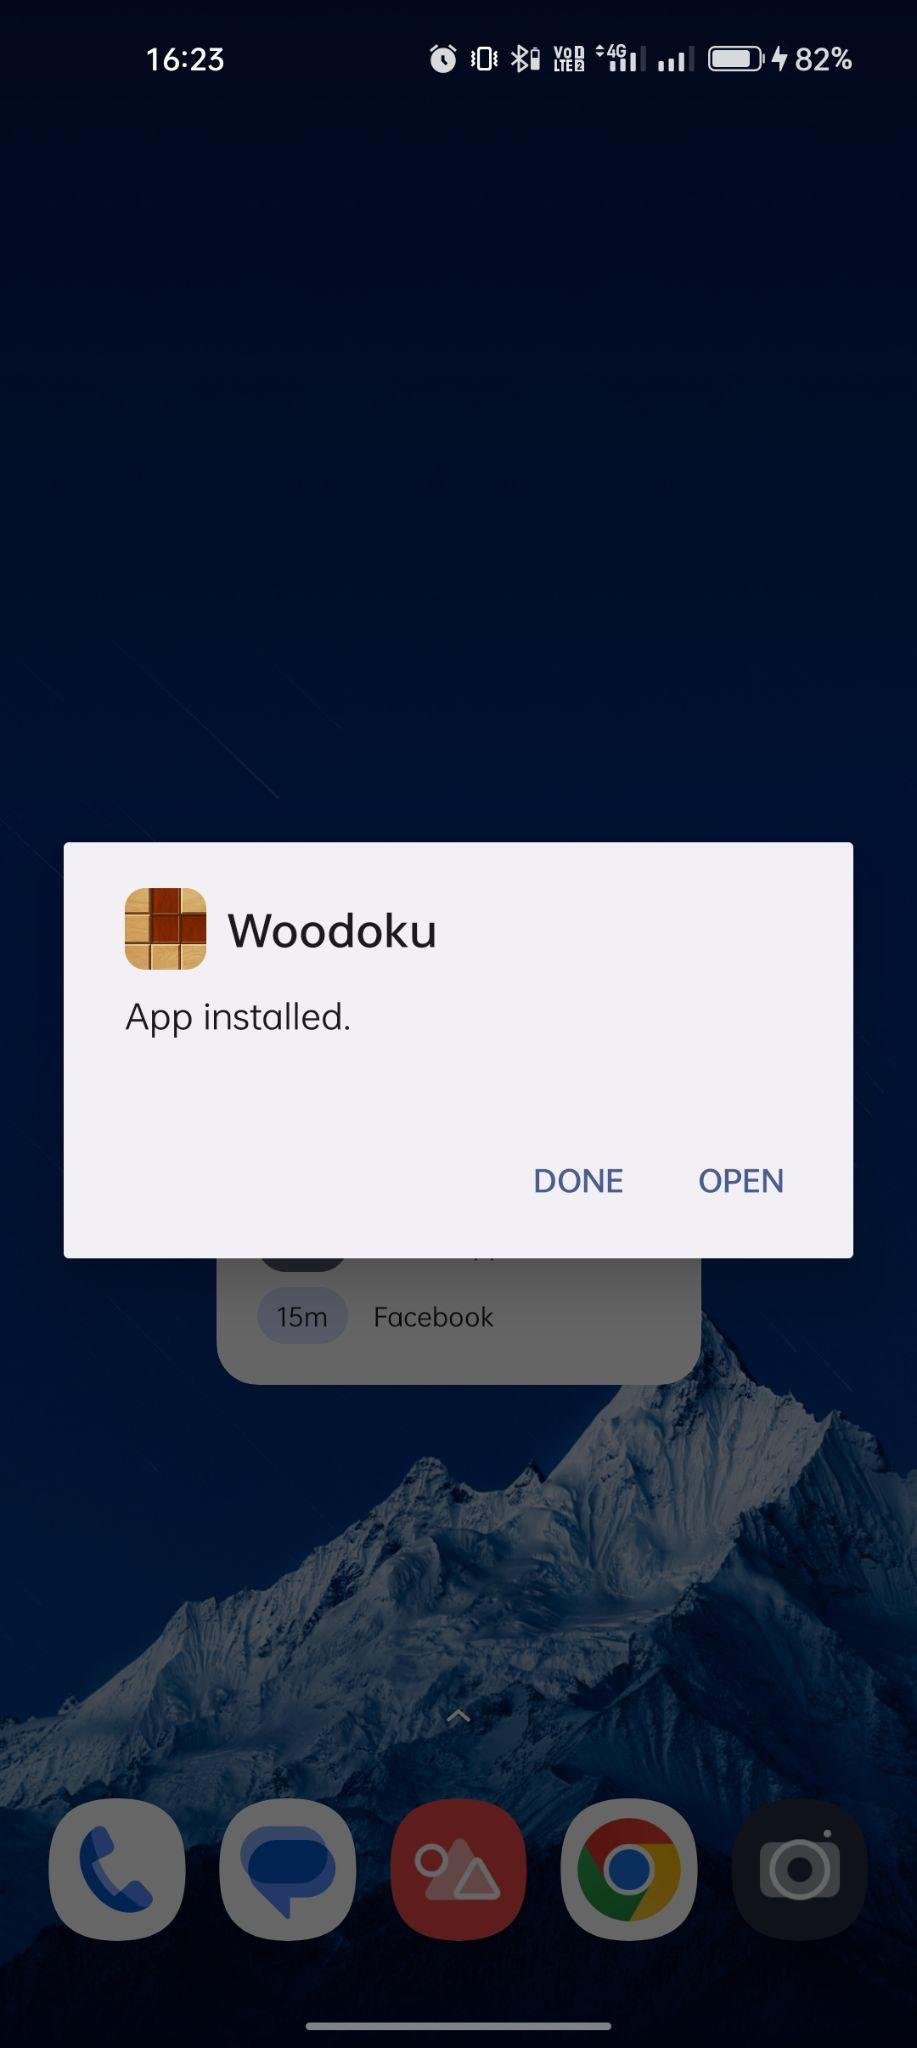 Woodoku apk installed